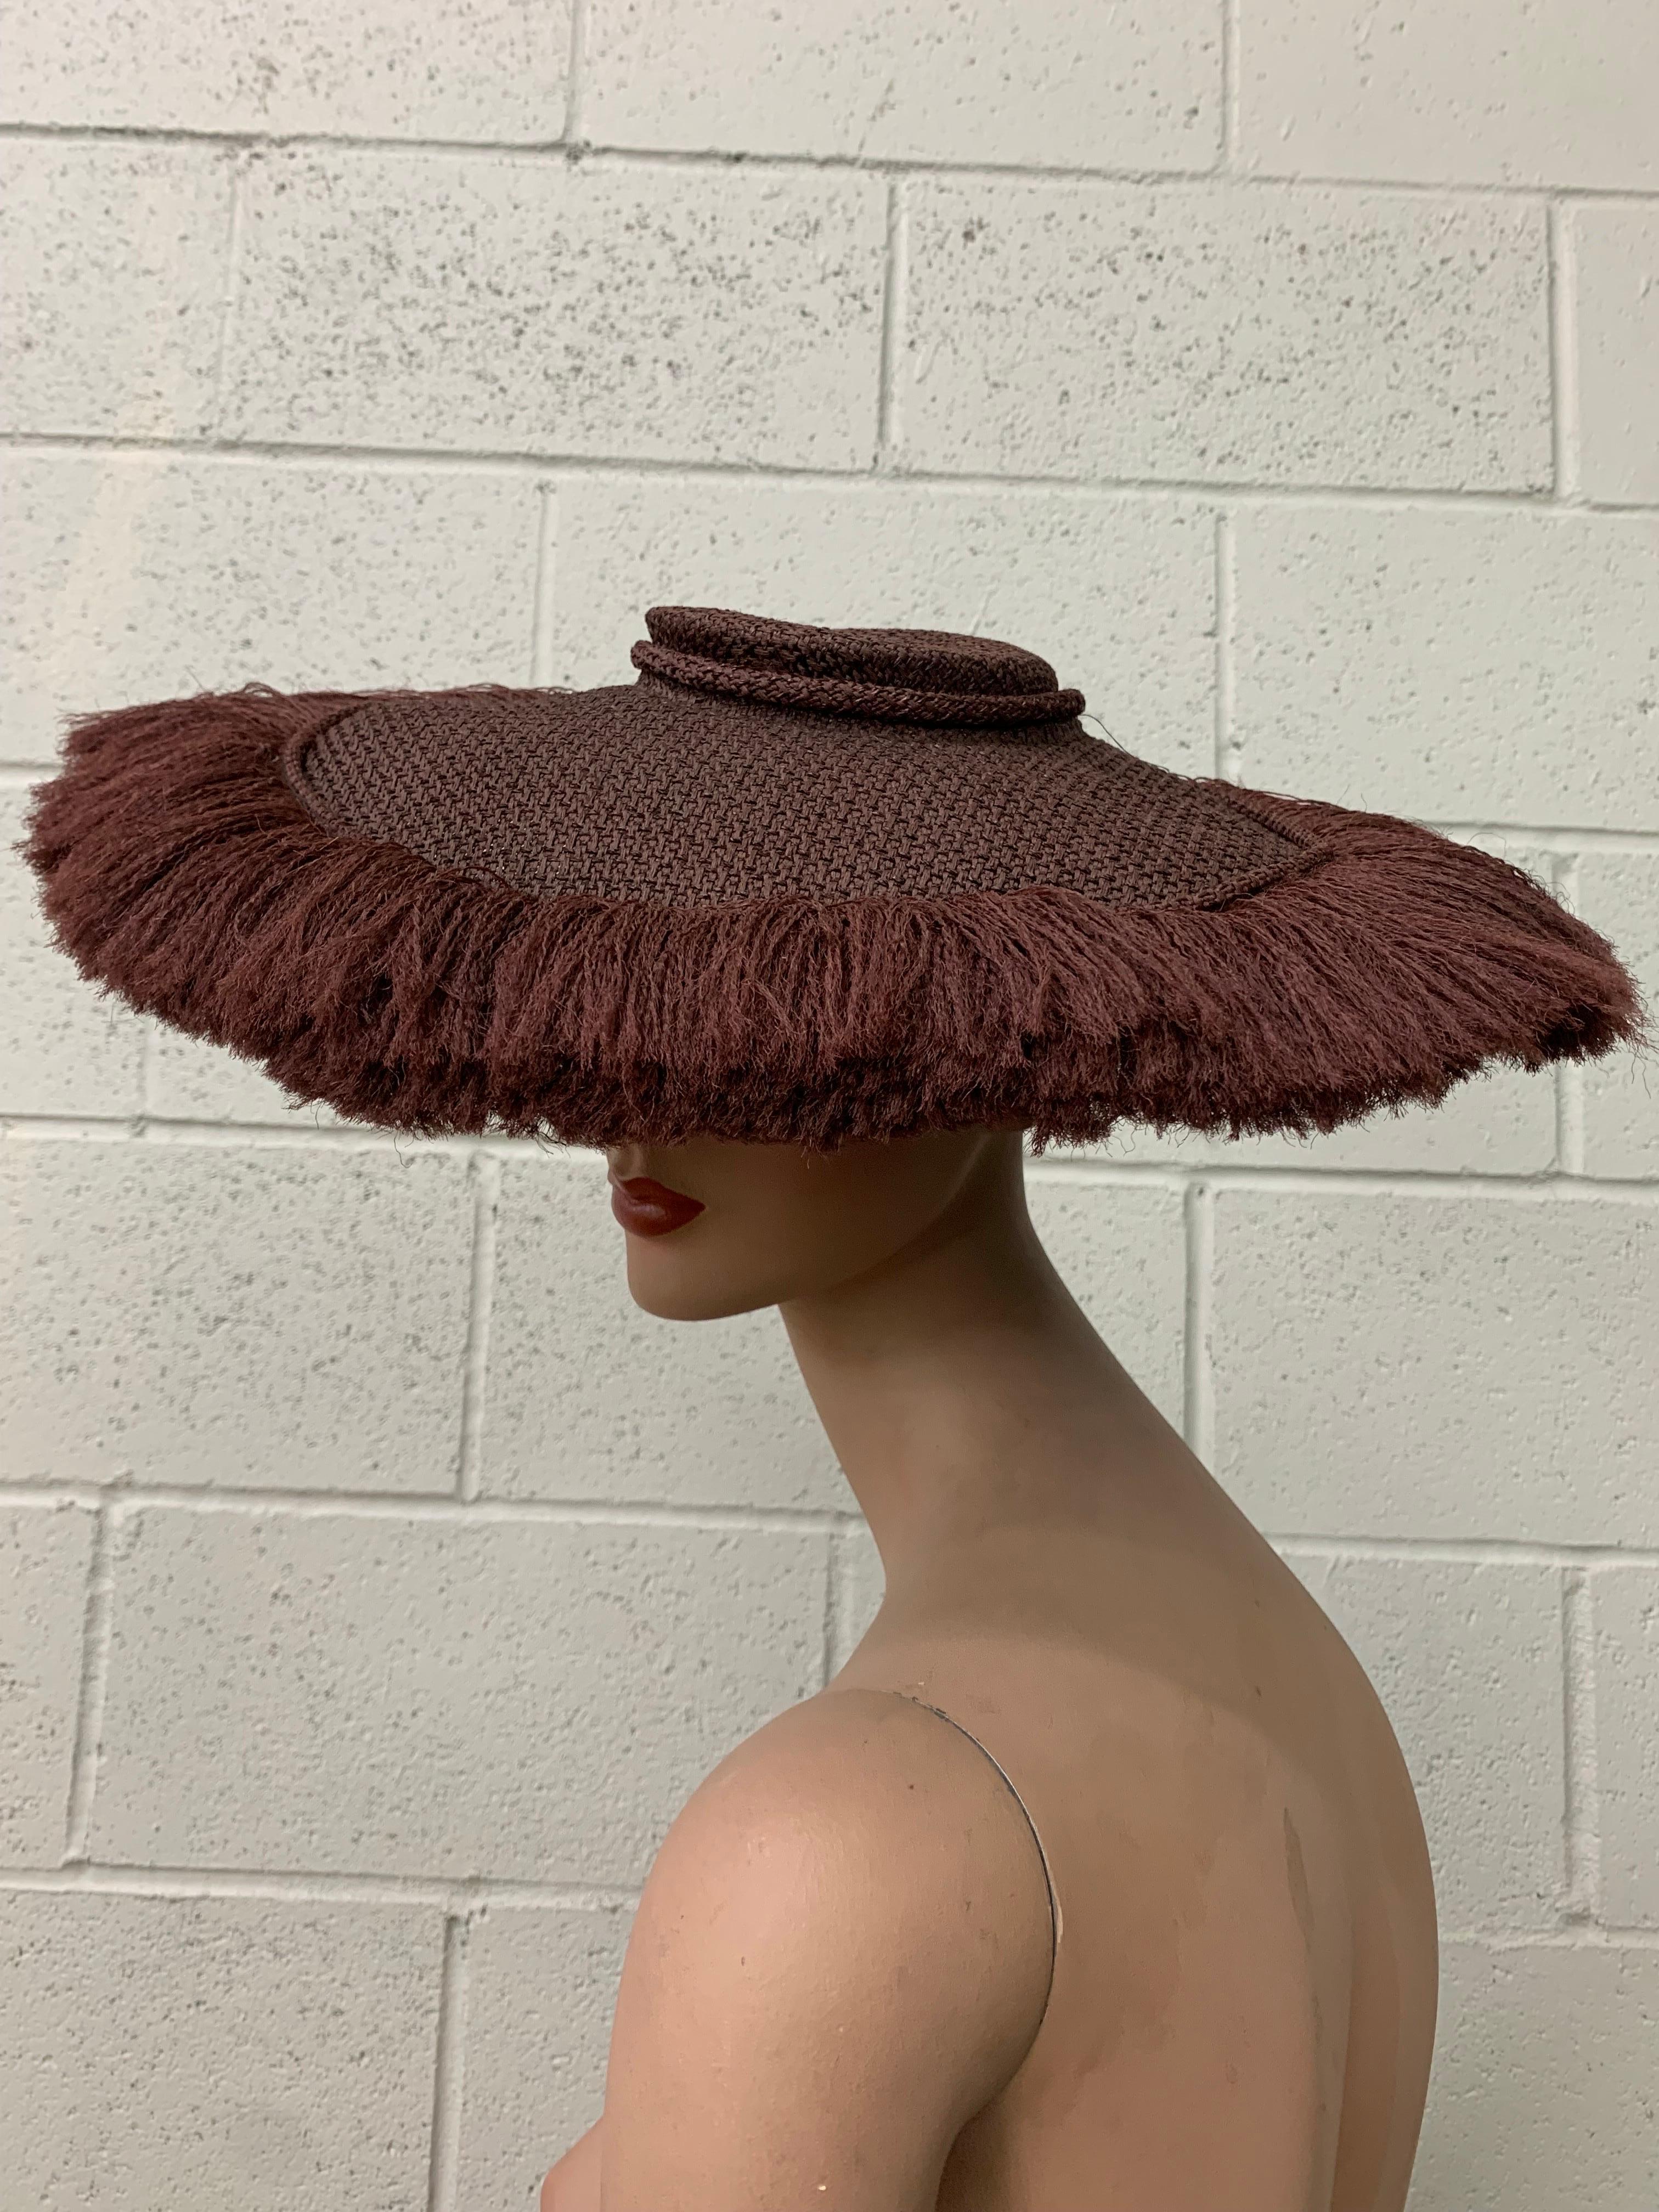 Shenley's 1940's Cocoa Brown Rayon Woven & Fringed Saucer Hat w Low Crown :  La bande intérieure et le bord sont joliment structurés pour plus de stabilité. Silhouette étonnante. Le tissu de la couronne tissée est utilisé comme un lourd rideau de